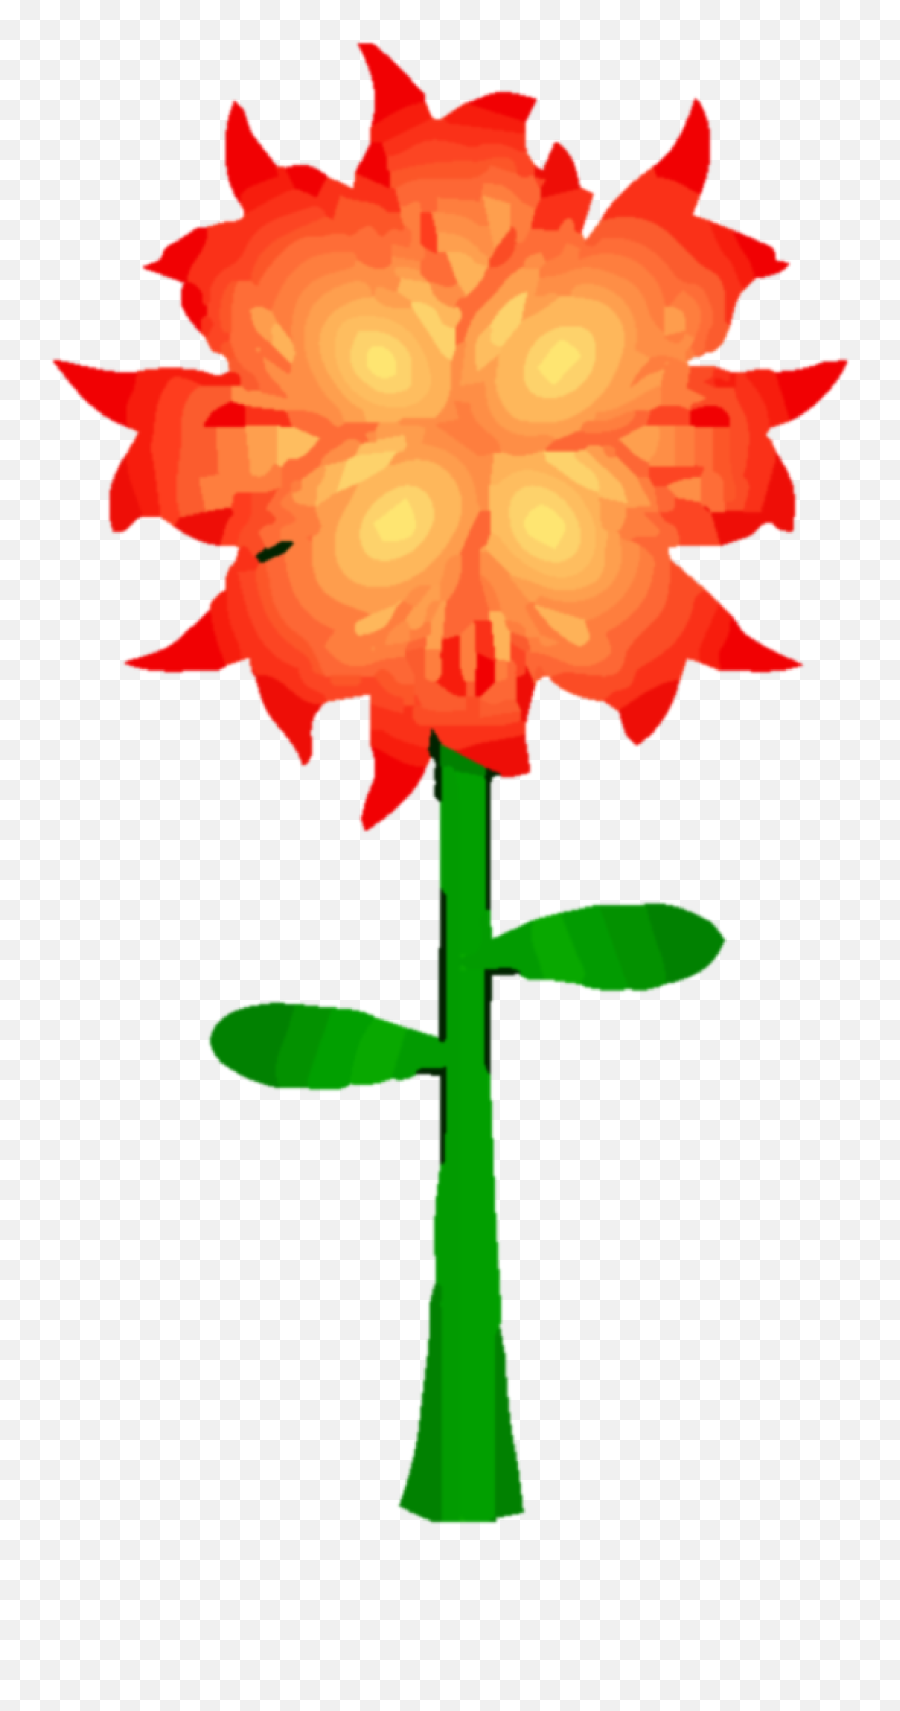 Fire Flower Png Clipart - Clipart Fire Flower Emoji,Flower Stem Png